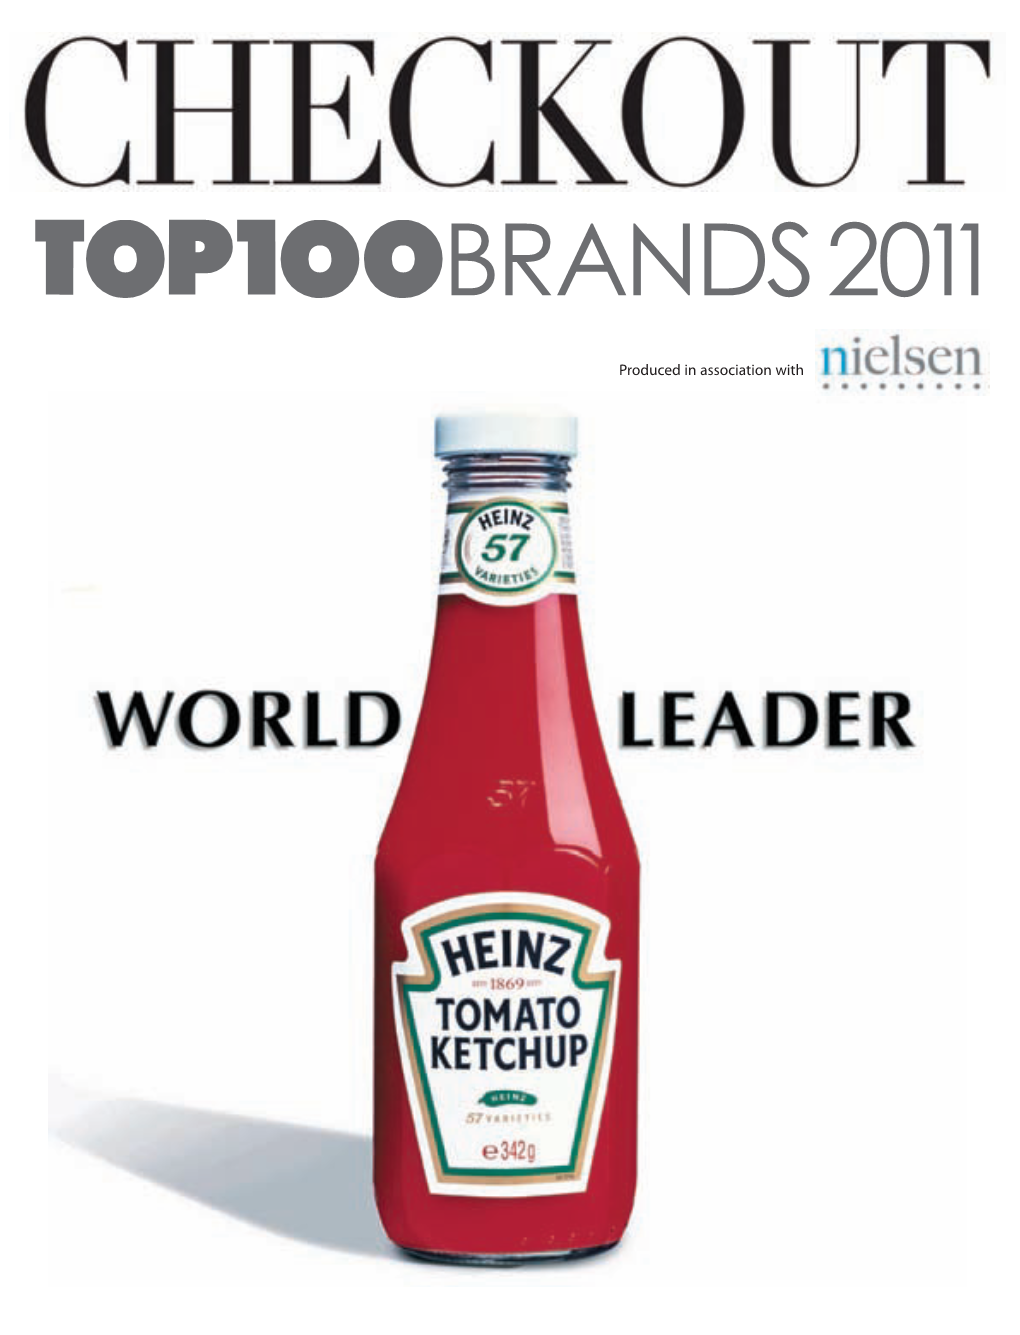 Checkout Top 100 Brands 2011, Nielsen.Pdf